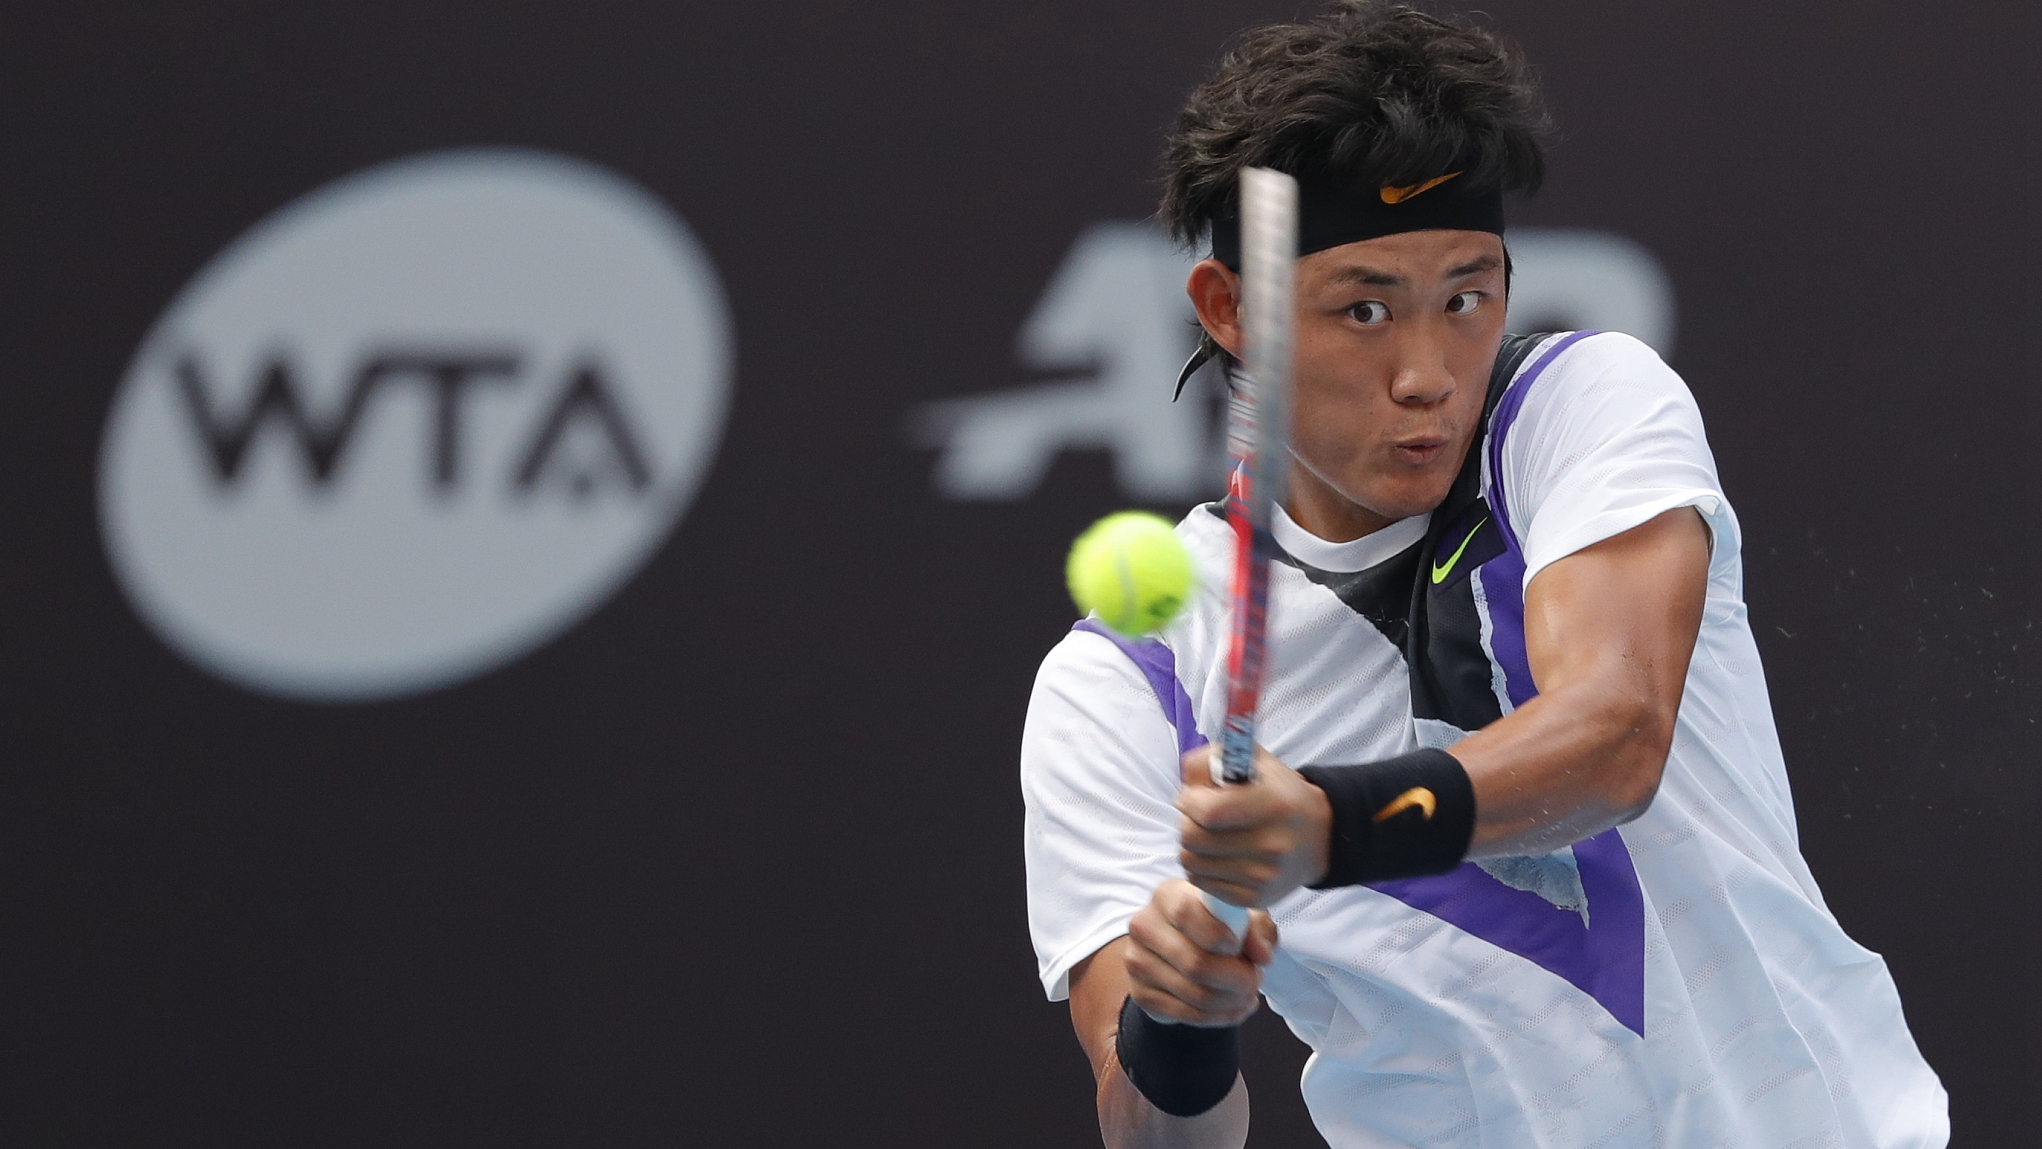 Wimbledon history made as Chinas Zhang Zhizhen reaches main draw